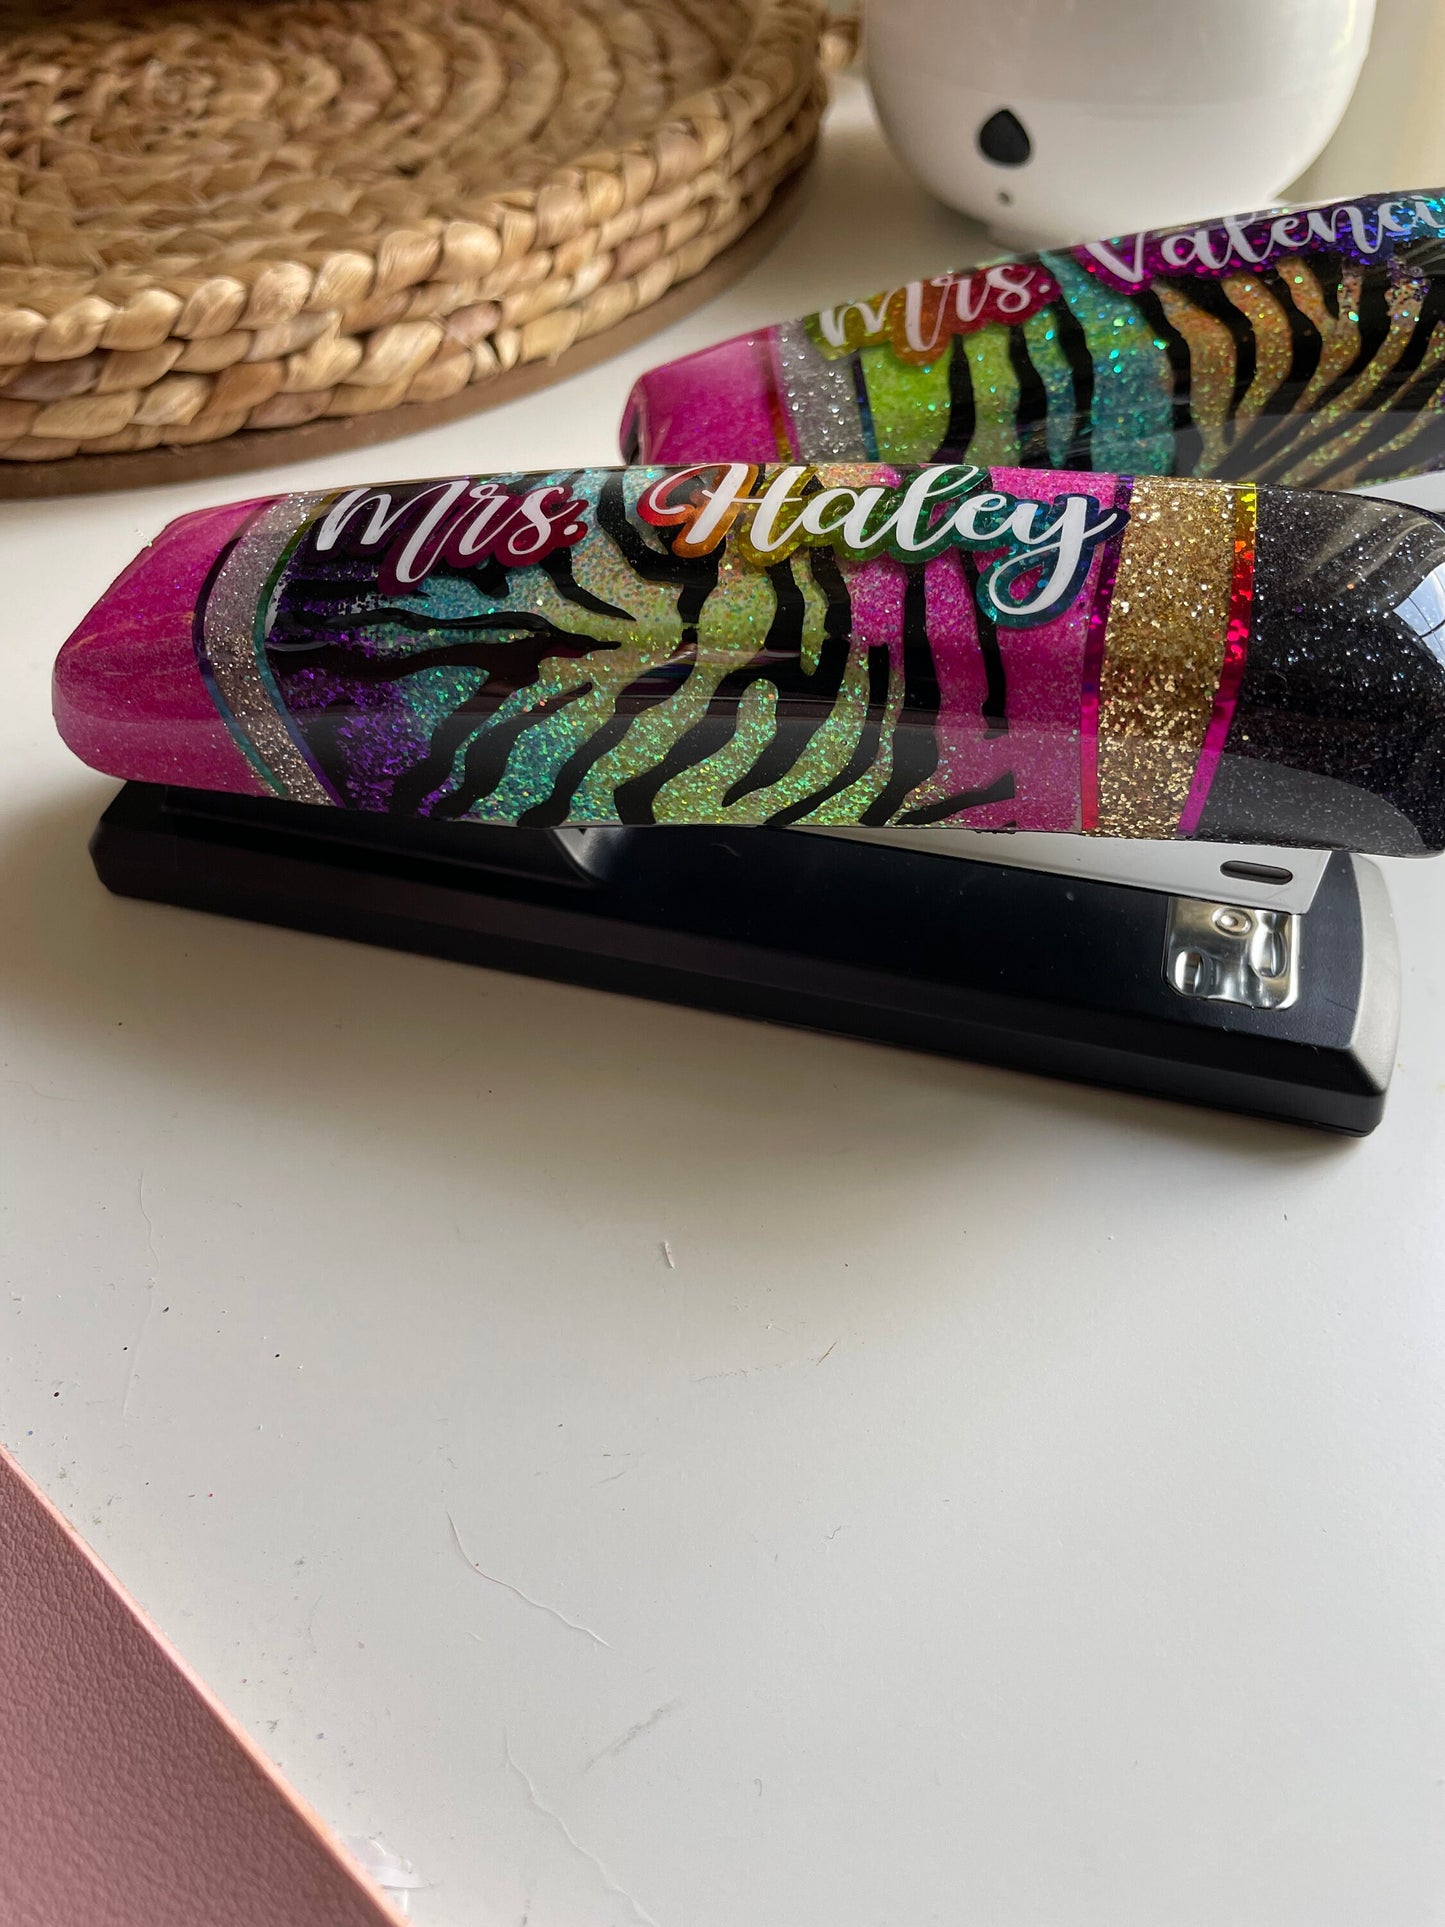 Personalized Glitter Stapler, Zebra Print, Rainbow Glitter Stapler, pencil stapler, Personalized Gifts,  Teacher Gifts, gifts for her, Admin